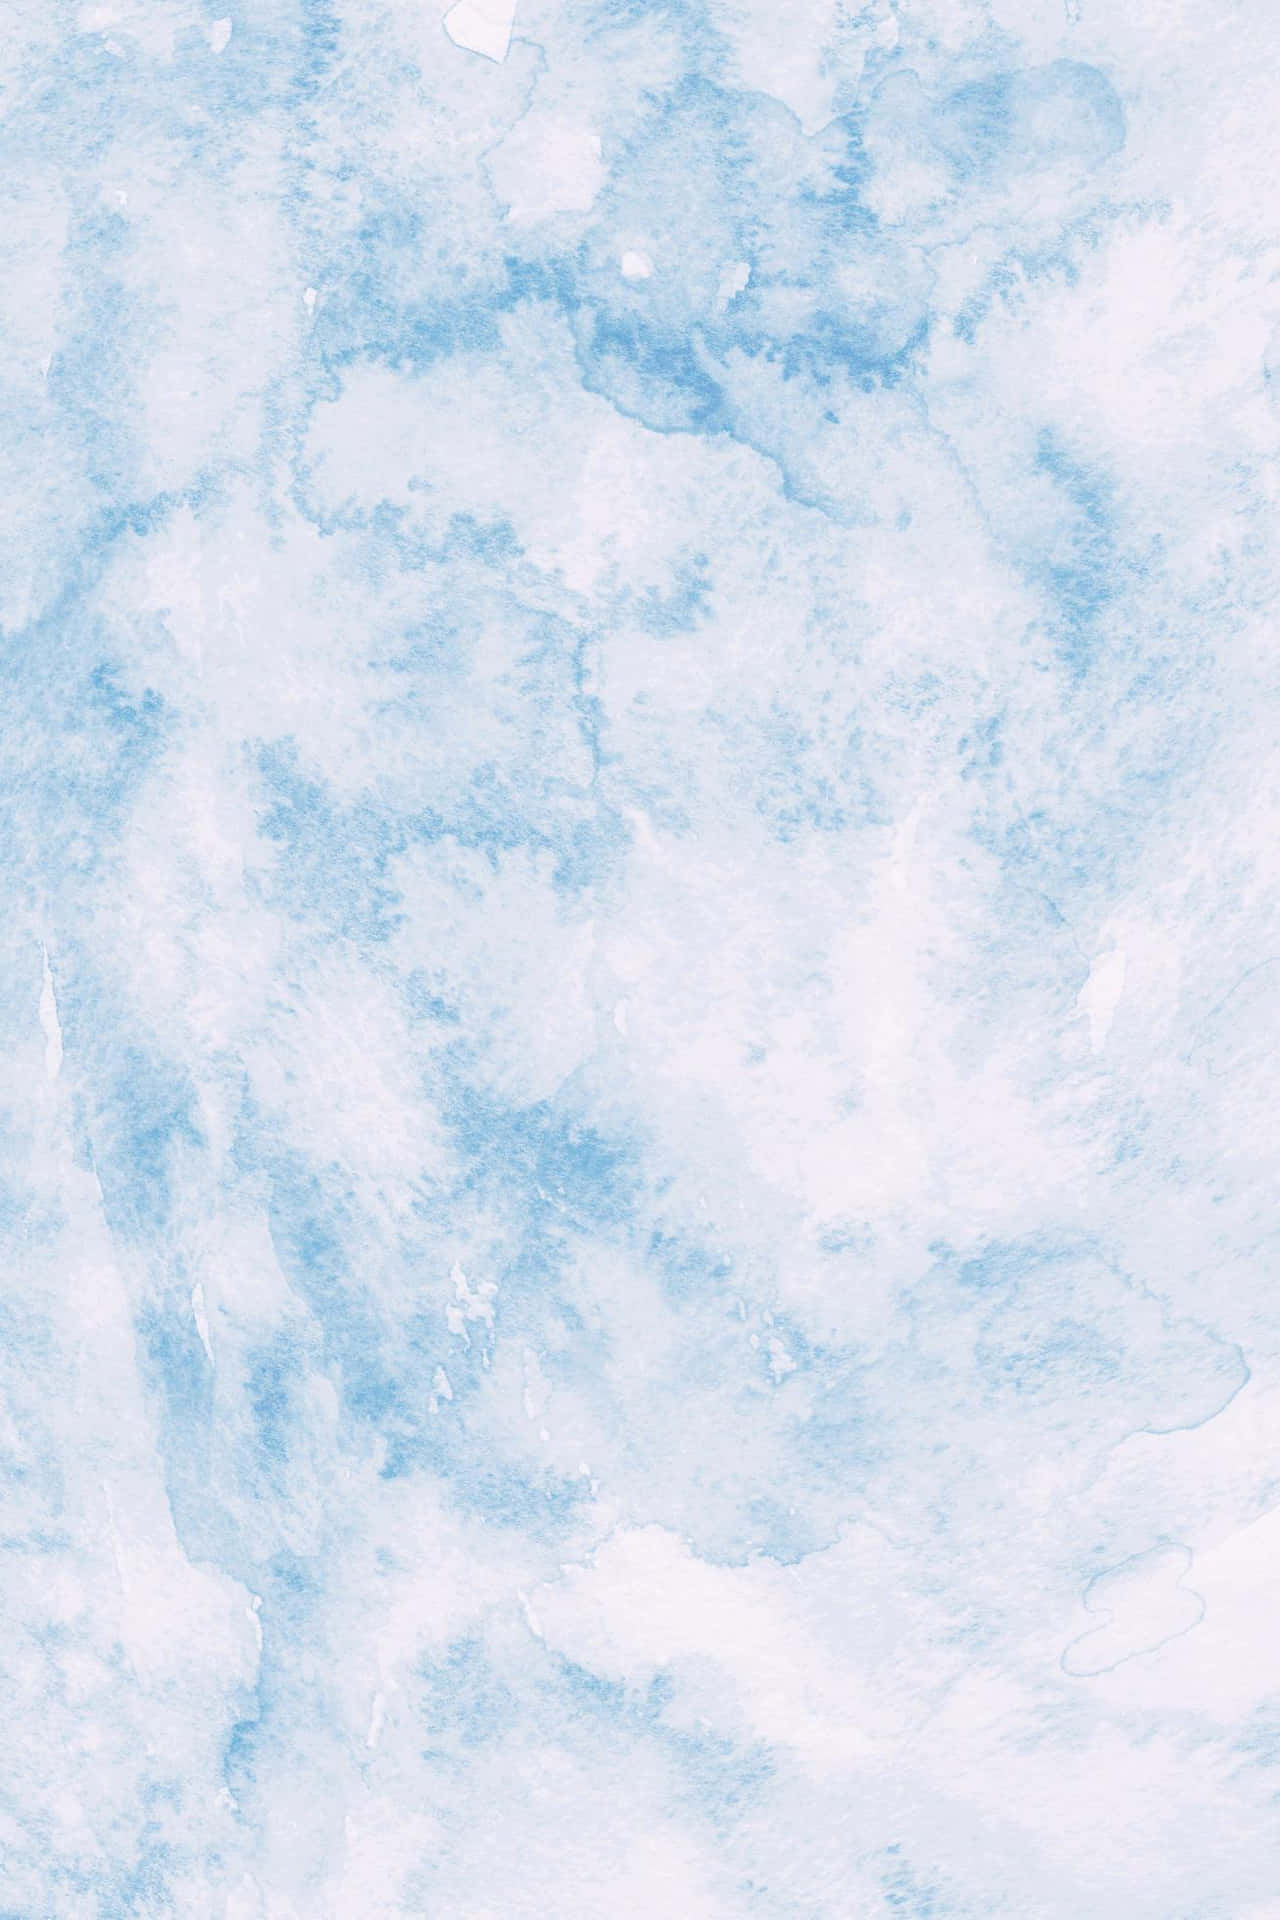 Zartenuancen Von Blauem Marmor Wallpaper